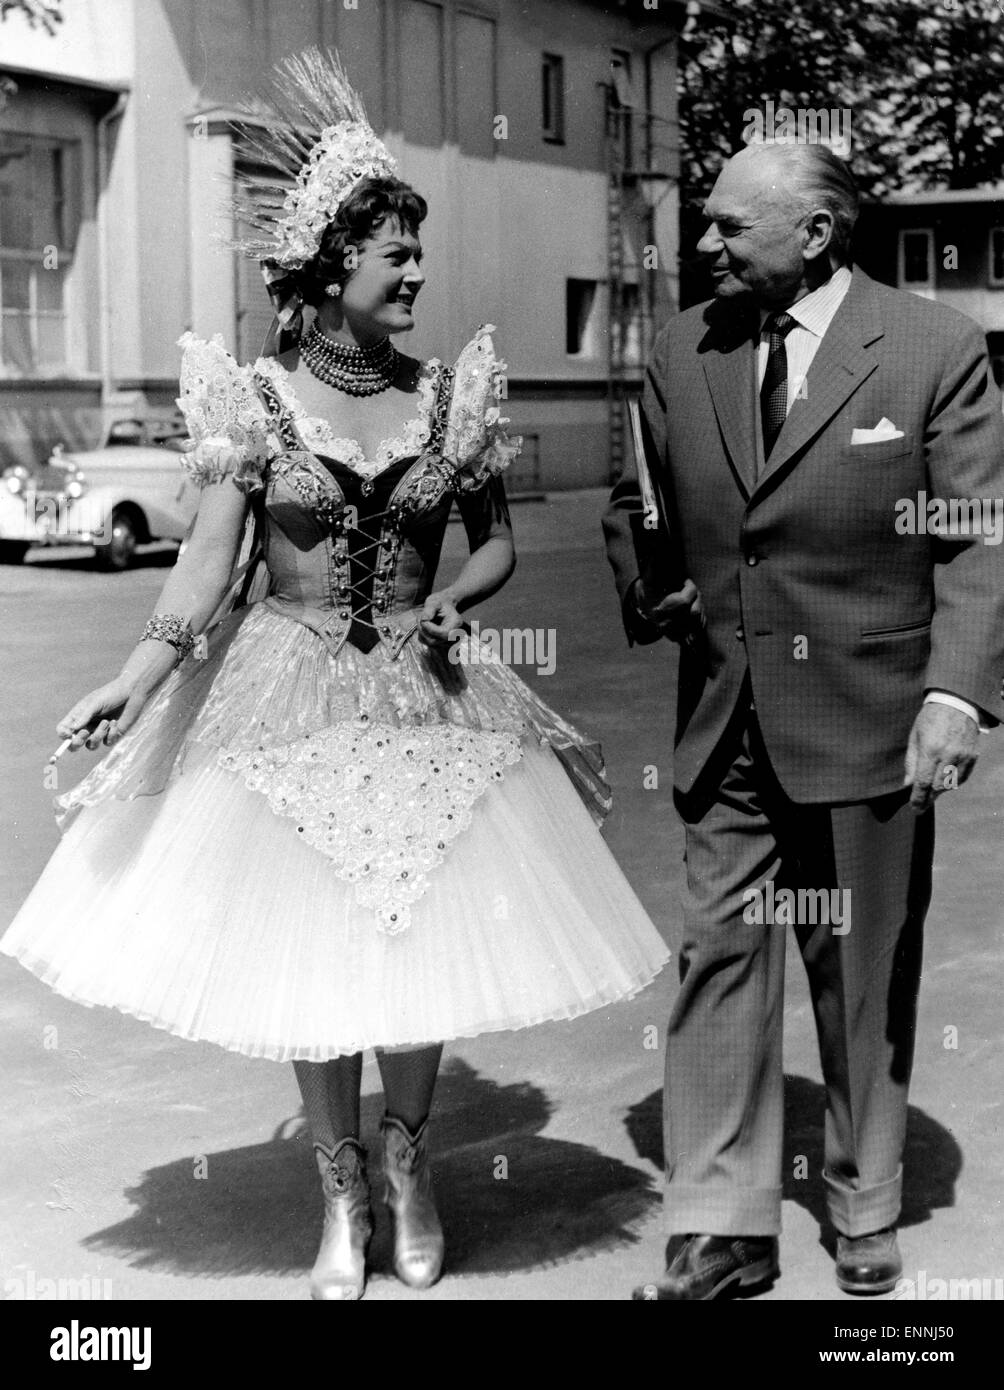 Marika Rökk in einer Drehpause im Kostüm und mit Zigarette mit ihrem 1964 verstorbenen Ehemann, dem Regissuer Georg Jacoby. Foto Stock